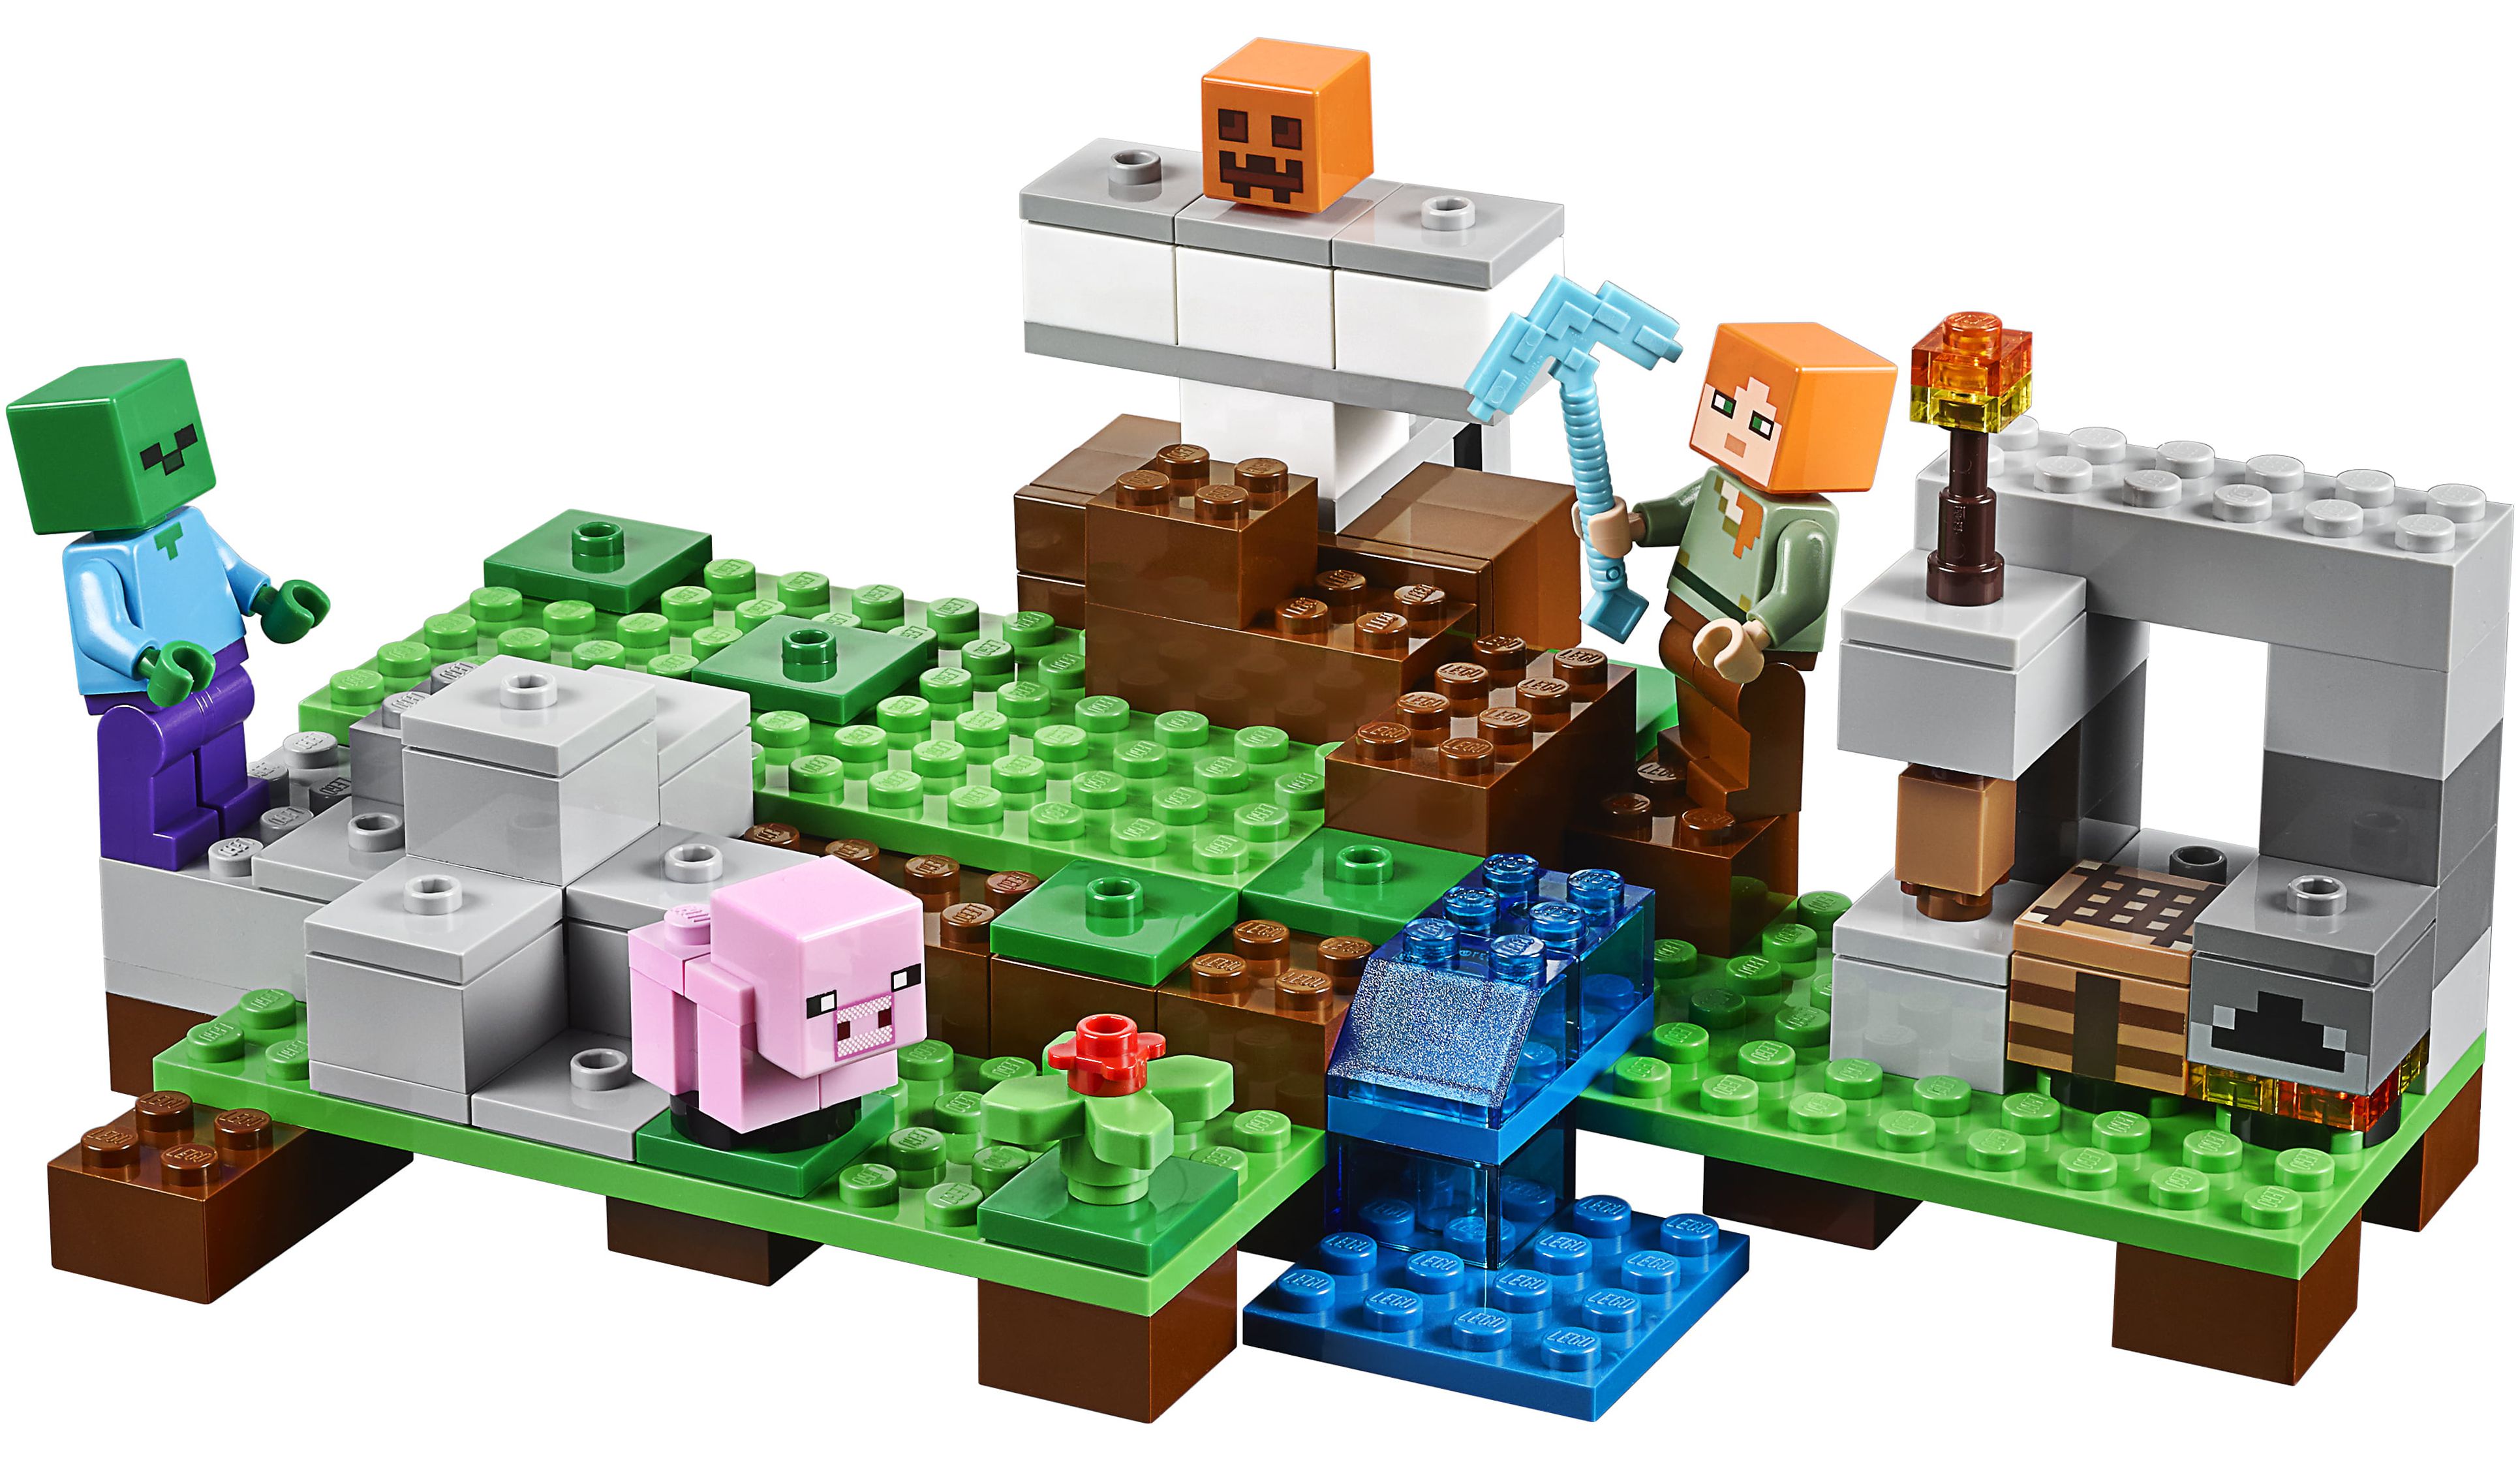 Lego Minecraft The Iron Golem, 21123 - image 2 of 4